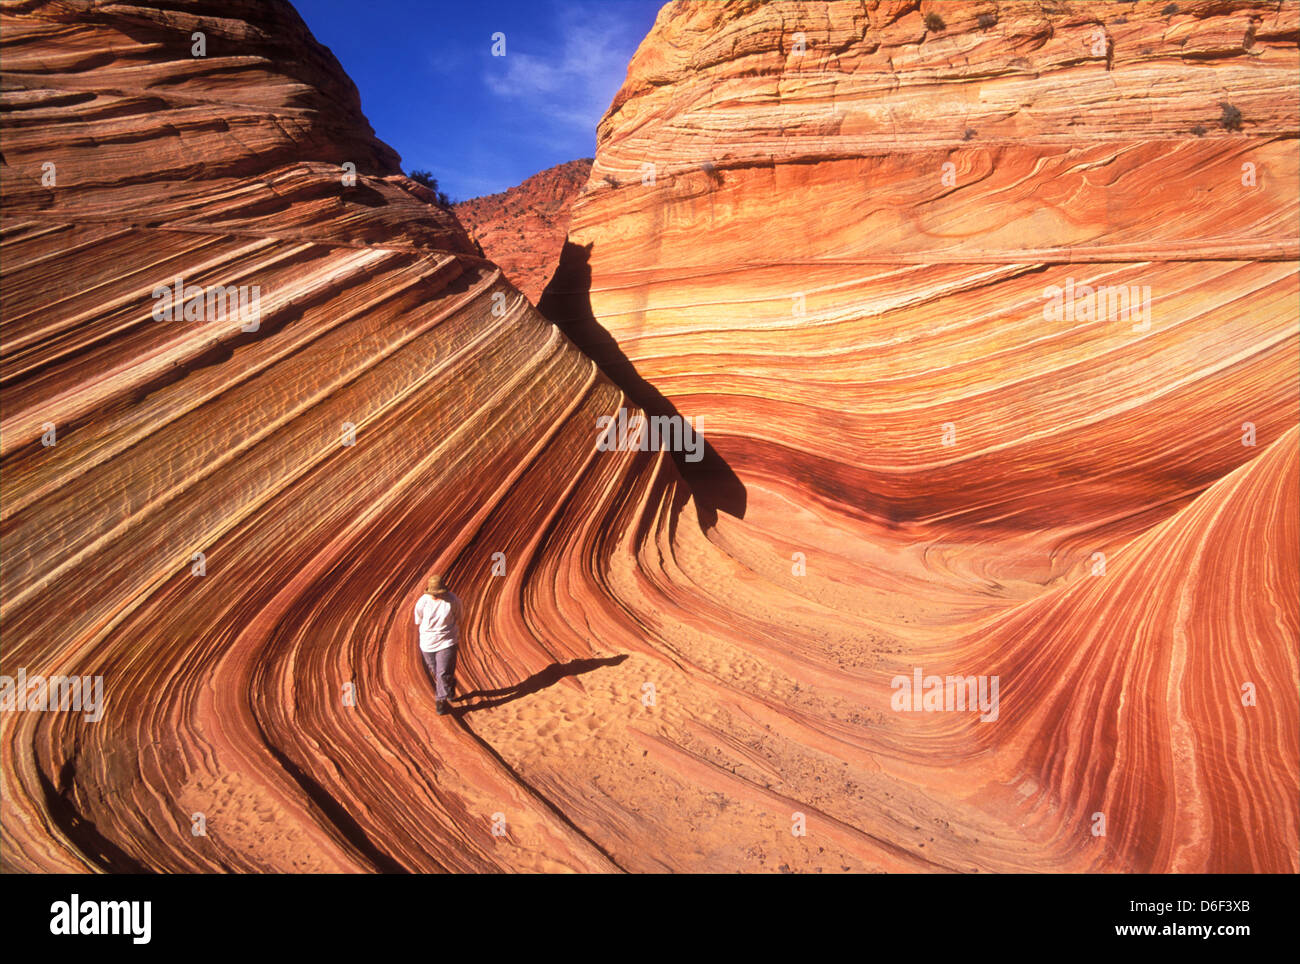 Touristen, die zu Fuß auf dem Sandstein flossen in Coyote Buttes north Wave Vermillion Cliffs Utah Arizona Vereinigte Staaten von Amerika Stockfoto